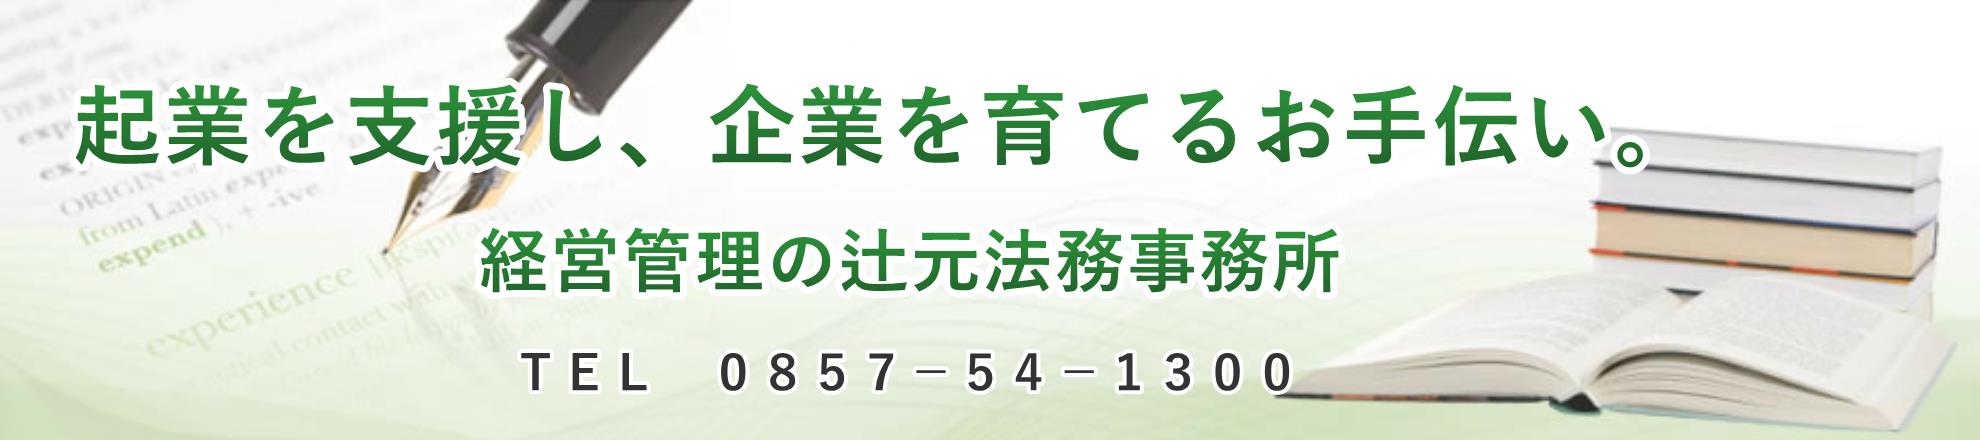 鳥取県の産廃収集運搬の財務診断書